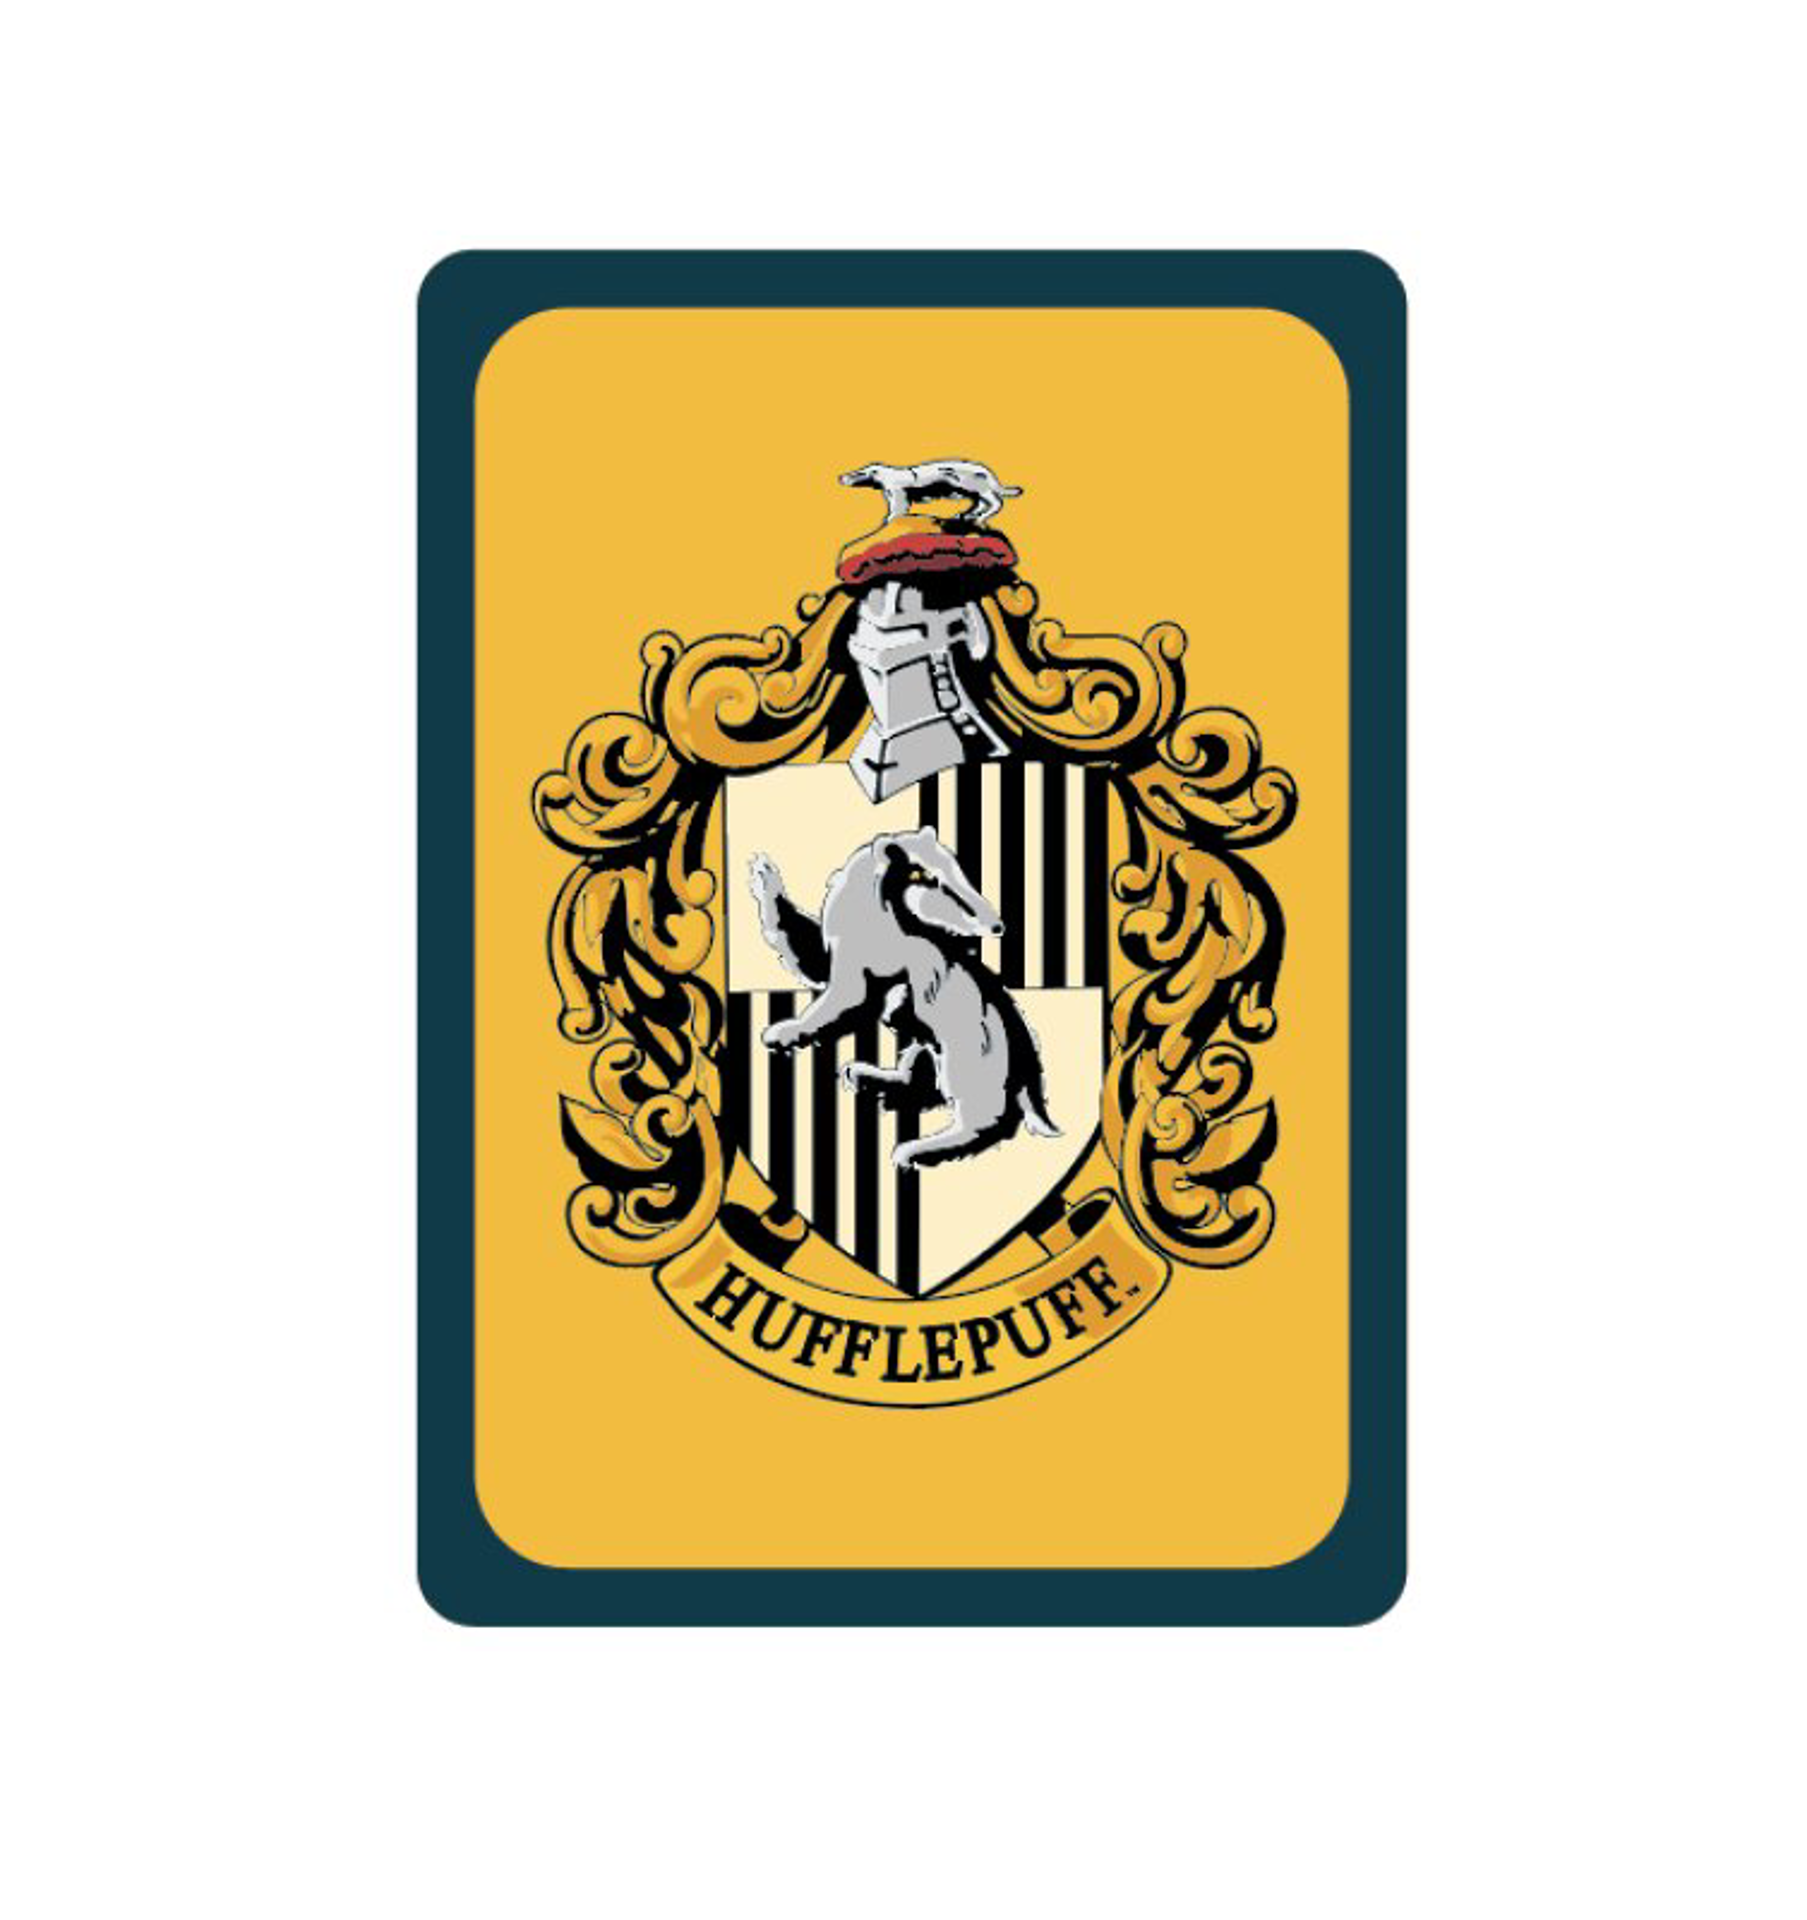 Porte clé emblème serdaigle - Harry Potter